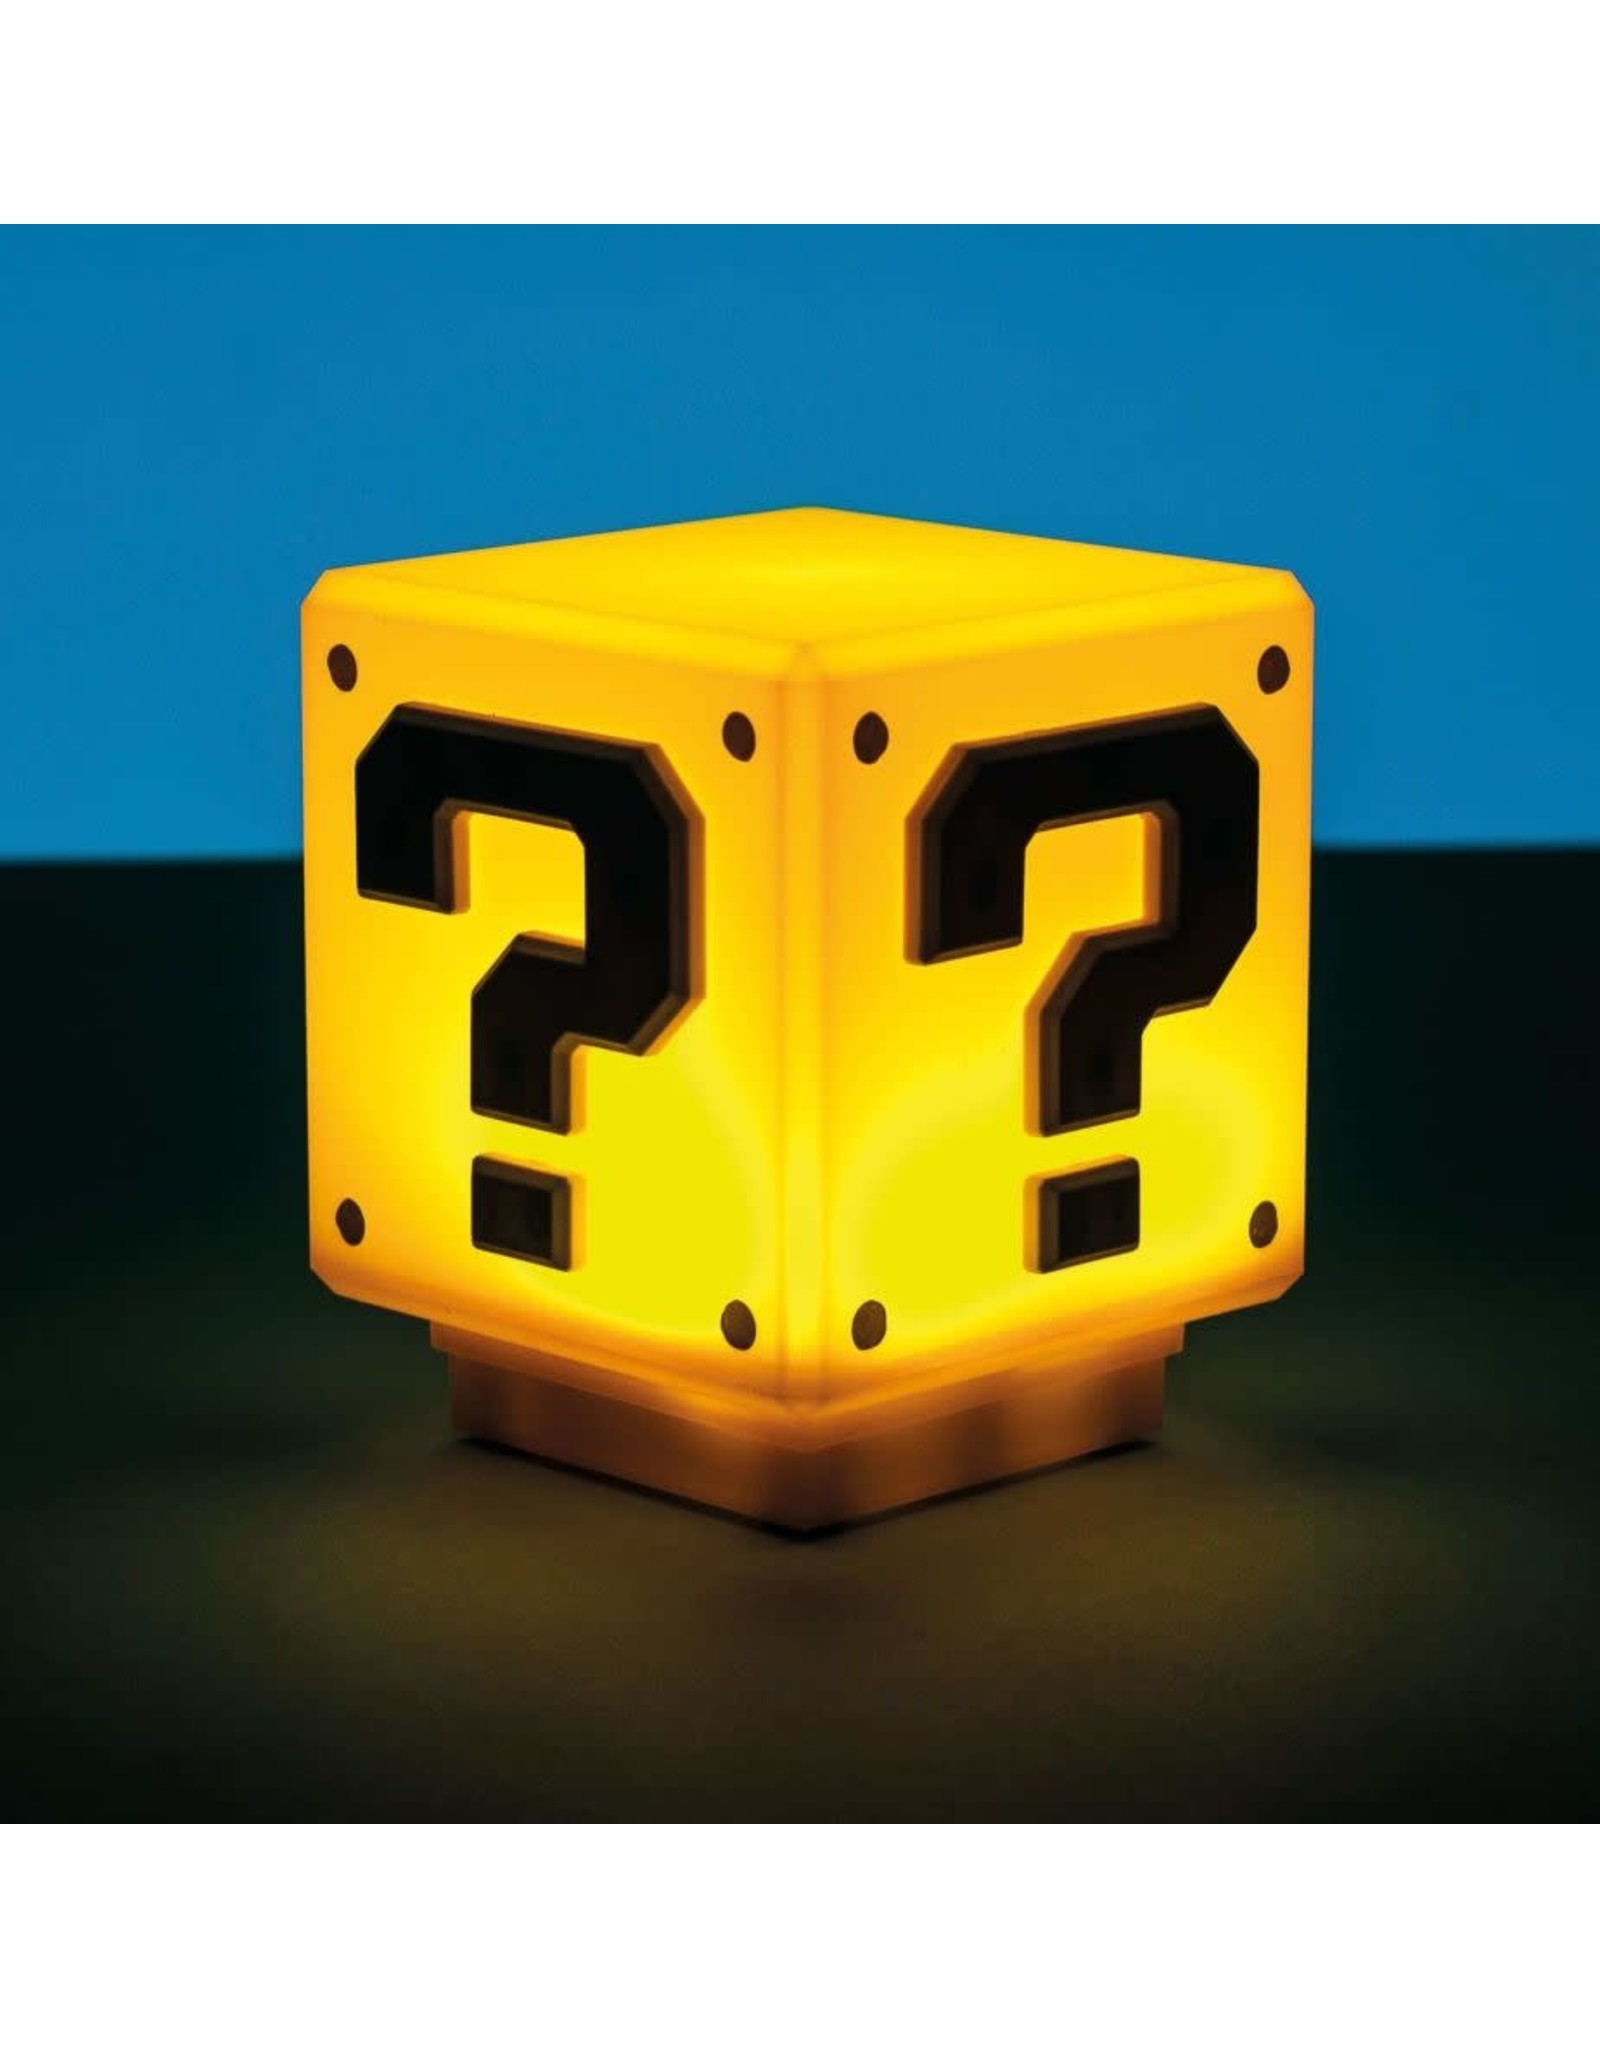 Paladone Super Mario Bros Mini Question Block Light